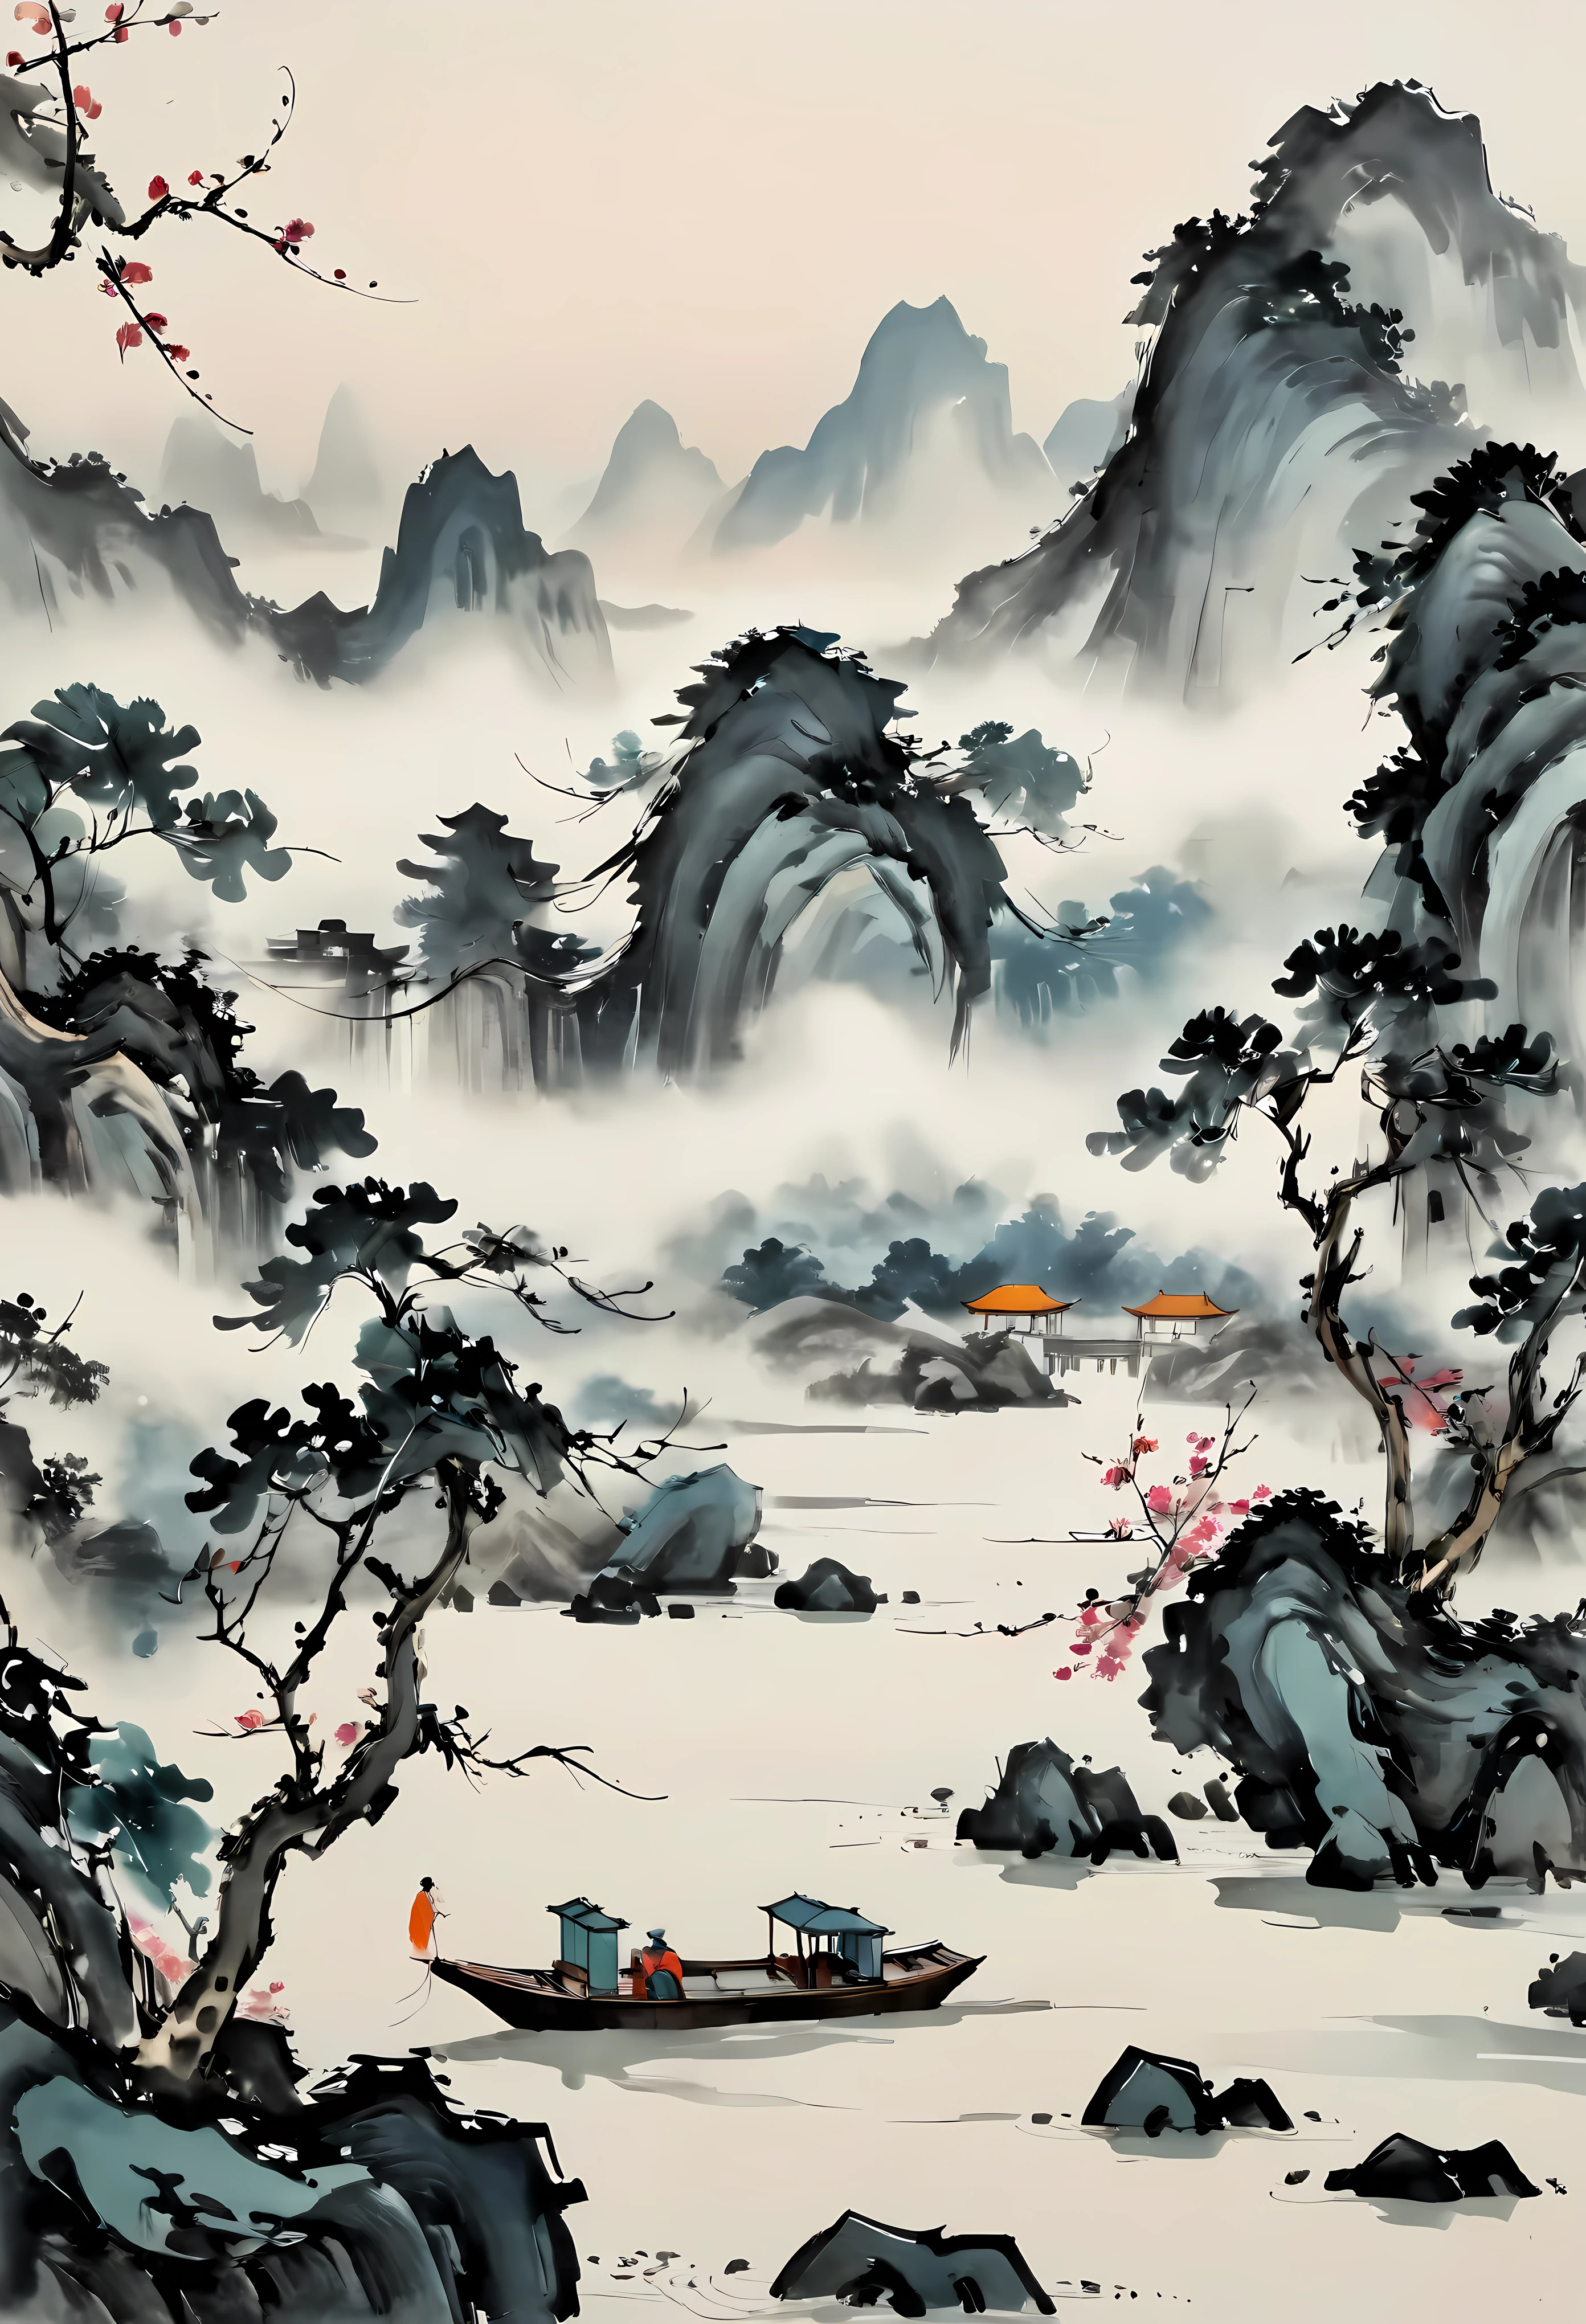 ((Pintura estilo Wu Guanzhong):1.2),((Pintura a tinta chinesa):1.2),((Conceito de pintura ocidental):1.2),((interpretações modernas de temas tradicionais)1.1), ((criando efeitos visuais únicos através de cores e linhas):1.1). | (melhor qualidade,4K,alta resolução,obra de arte:1.2),Ultra-detalhado,(realista,photorealista:1.37),efeito de pintura a óleo, cores vibrantes, pinceladas ousadas, textura rica, detalhes finos, padrões intrincados, composição dinâmica, iluminação atmosférica, atmosfera surreal, ambiente sereno, ambiente tranquilo, atenção meticulosa aos detalhes, uso magistral do espaço, cenário hipnotizante, estilo distinto, interpretação poética, emoções evocativas, fusão de tradição e modernidade, mistura harmoniosa de Oriente e Ocidente, delicado equilíbrio entre abstração e representação, celebração da beleza da natureza, um oásis de serenidade, elegância atemporal, móveis luxuosos, vistas panorâmicas de tirar o fôlego, paleta de cores harmoniosa, iluminação natural suave, gradientes de cores suaves, profundidade e dimensão, profundidade de campo imersiva.